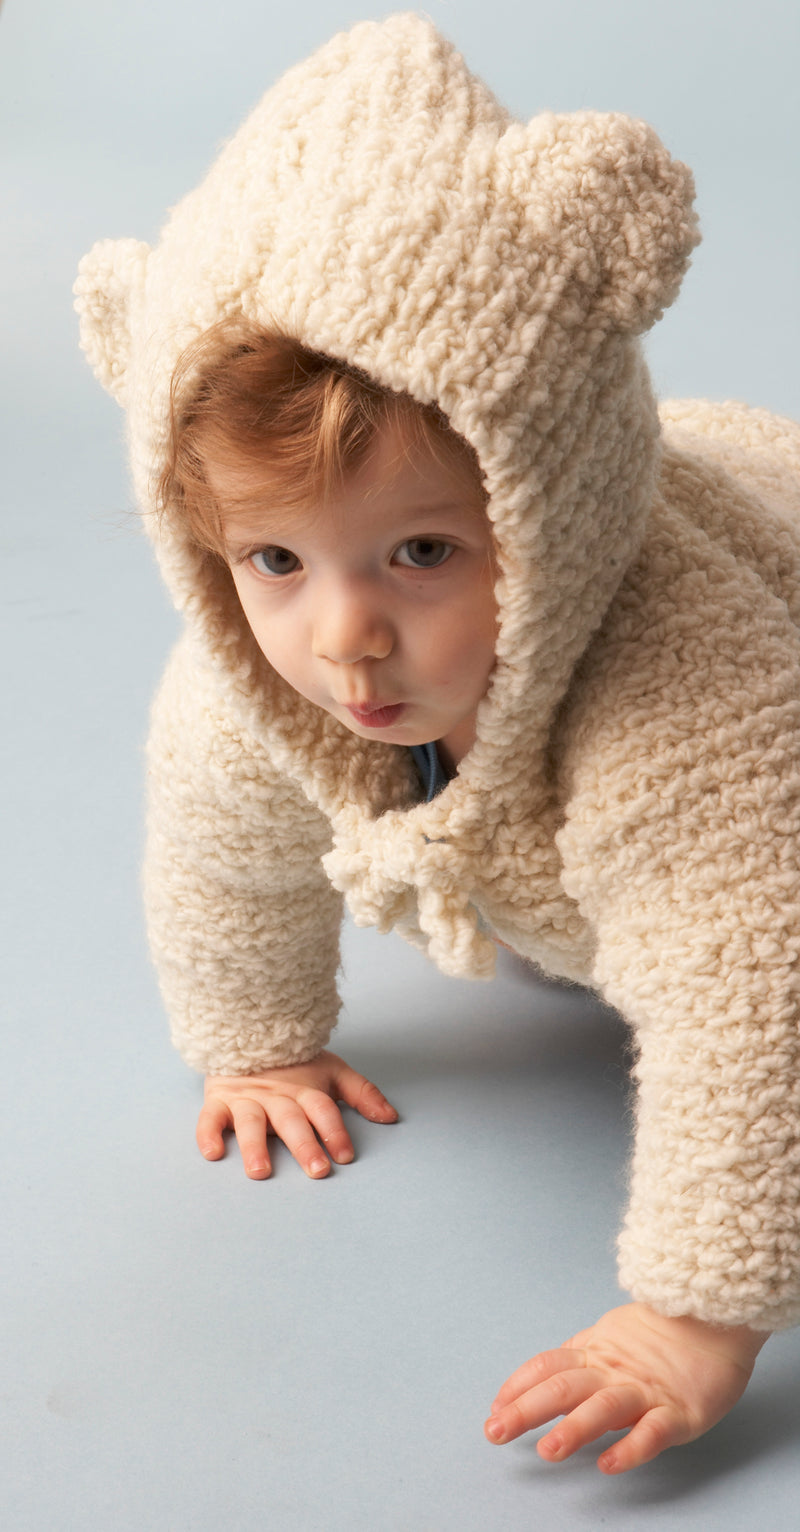 Baby Bear Hooded Jacket Pattern (Knit)